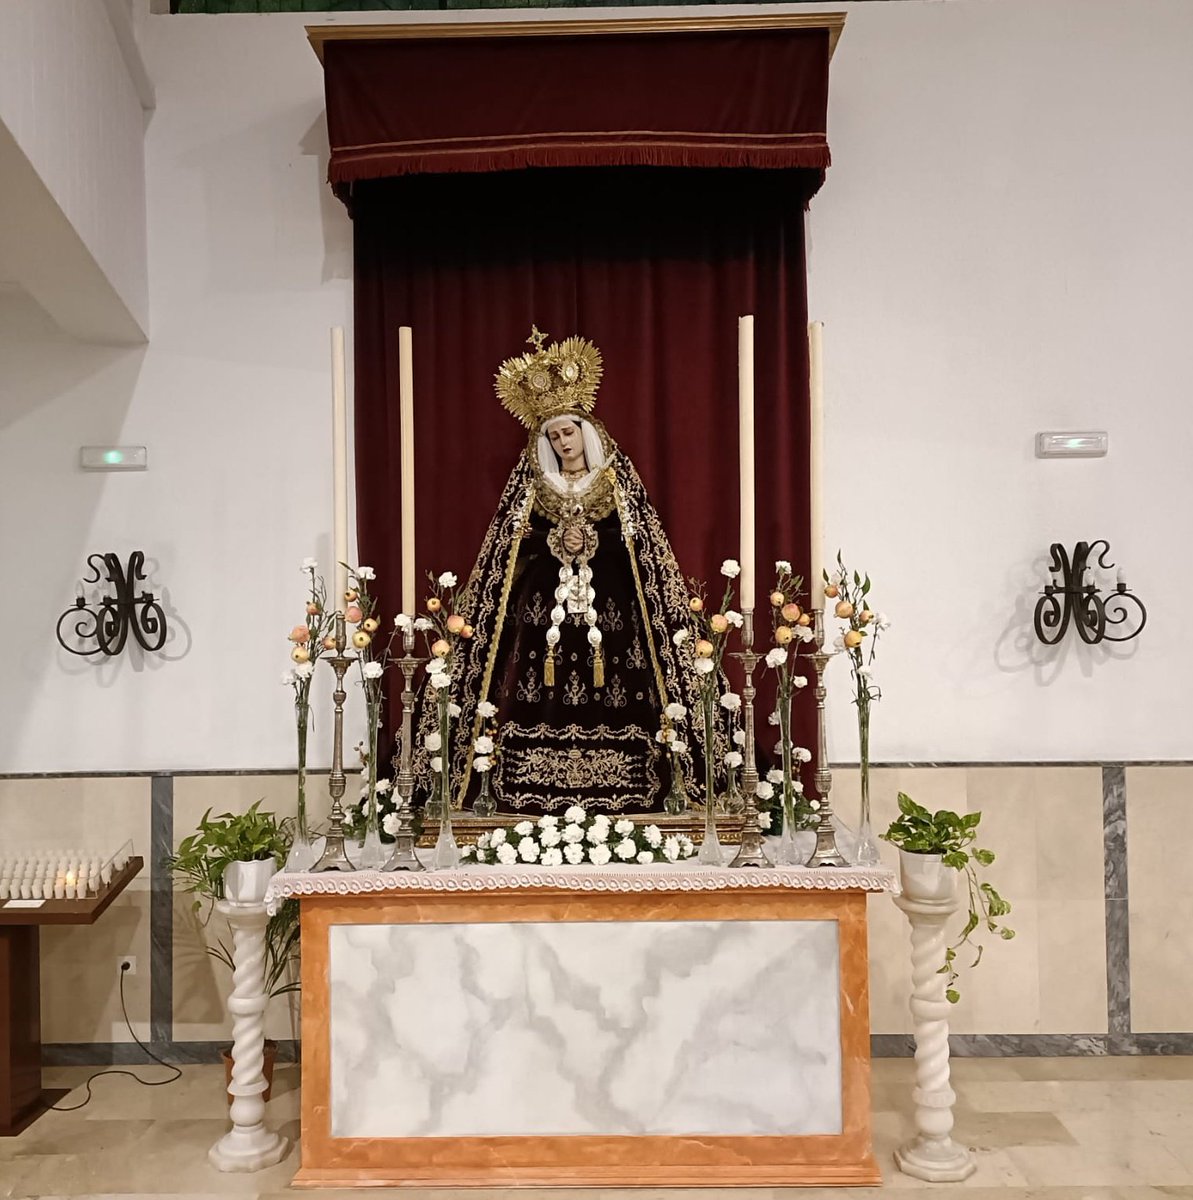 OFICIAL| Santa María del Valle ya ocupa su altar una vez finalizados los Cultos Cuaresmales. #CofradiasMLG #ValledeMálaga